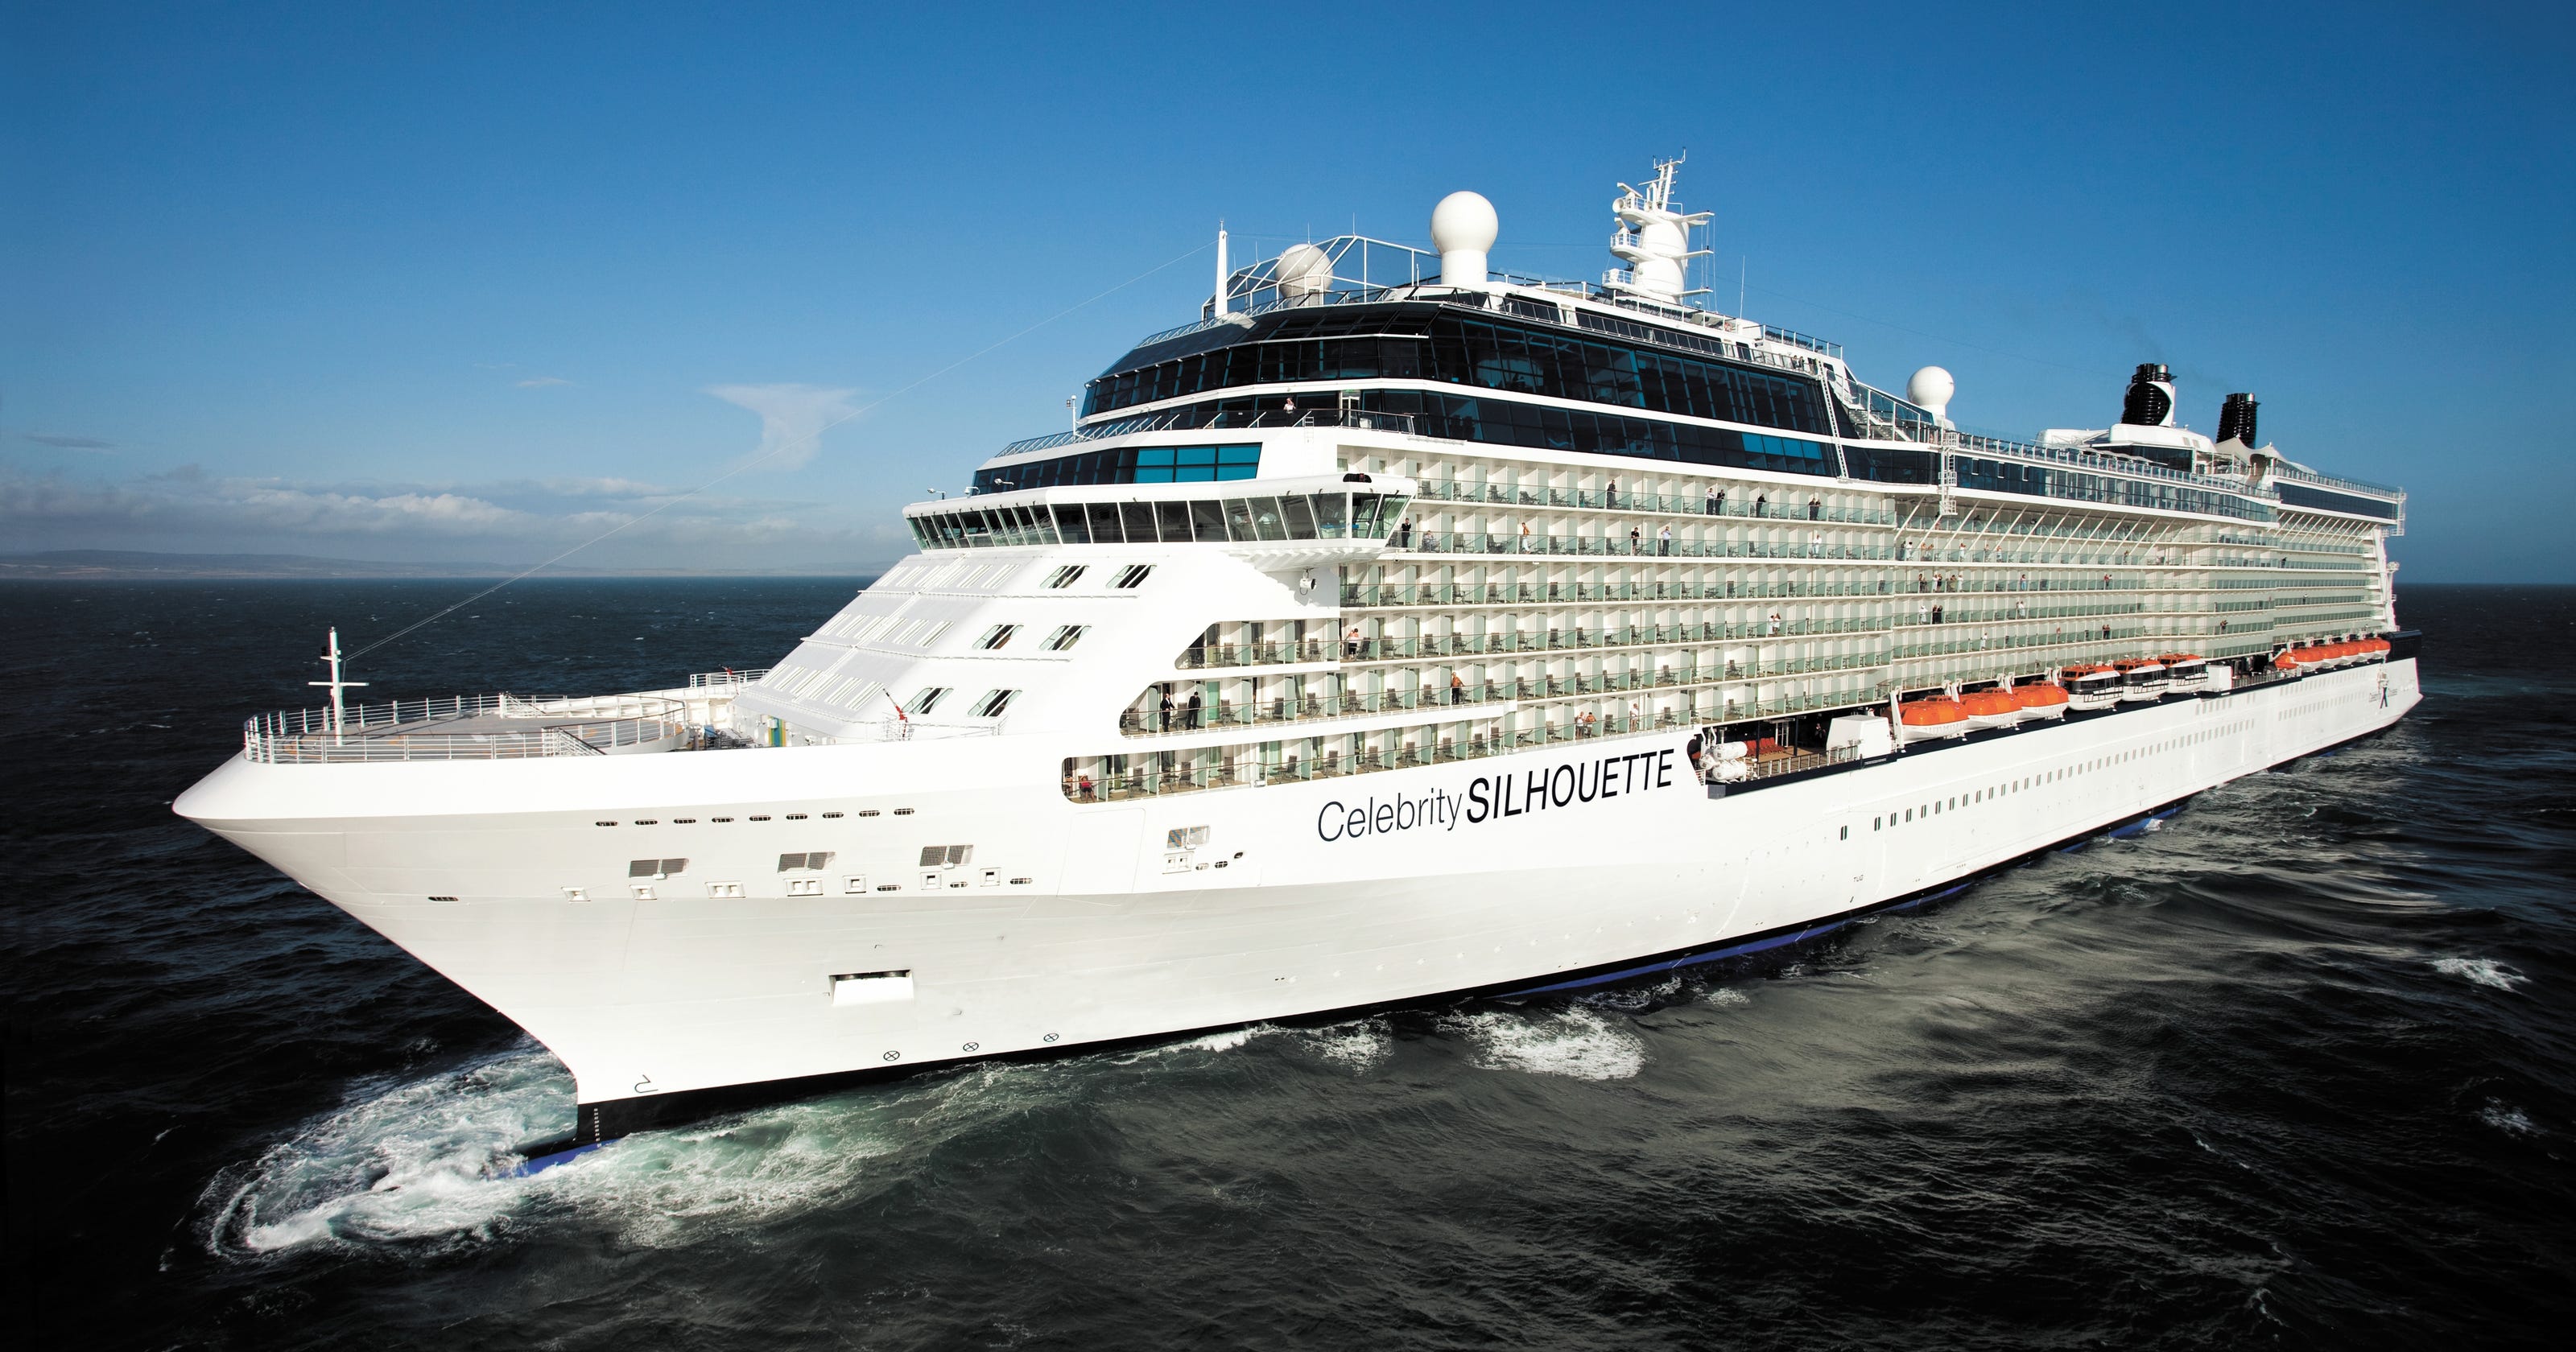 Celebrity Cruises overhauls loyalty program